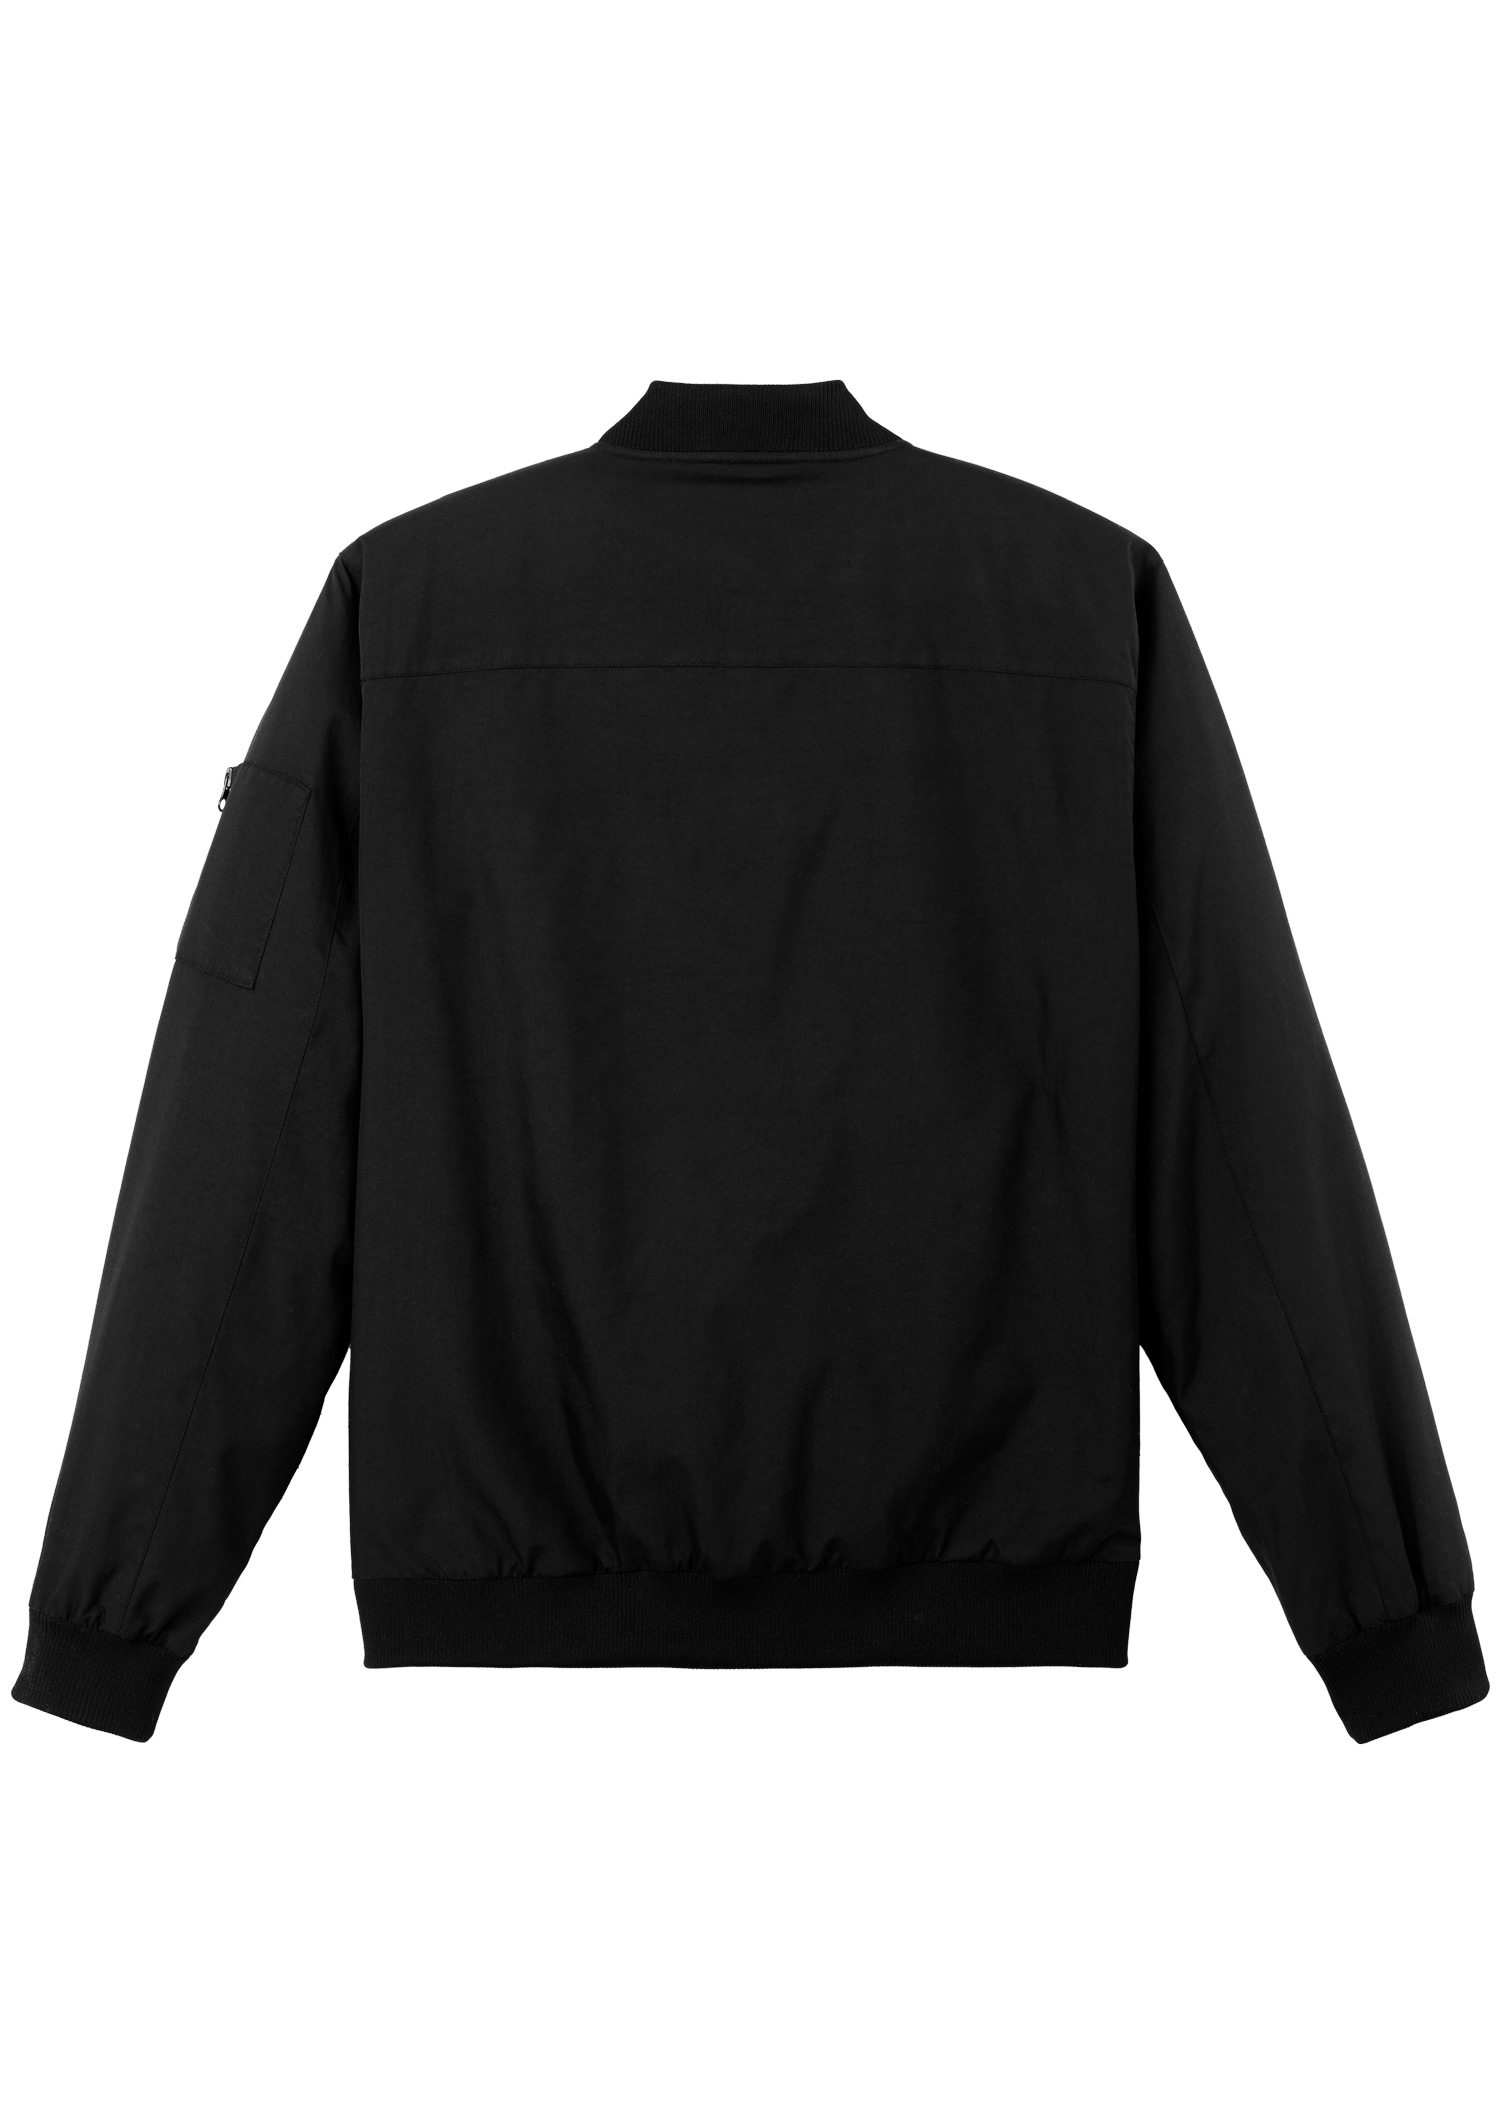 Bomber jacket black unisex